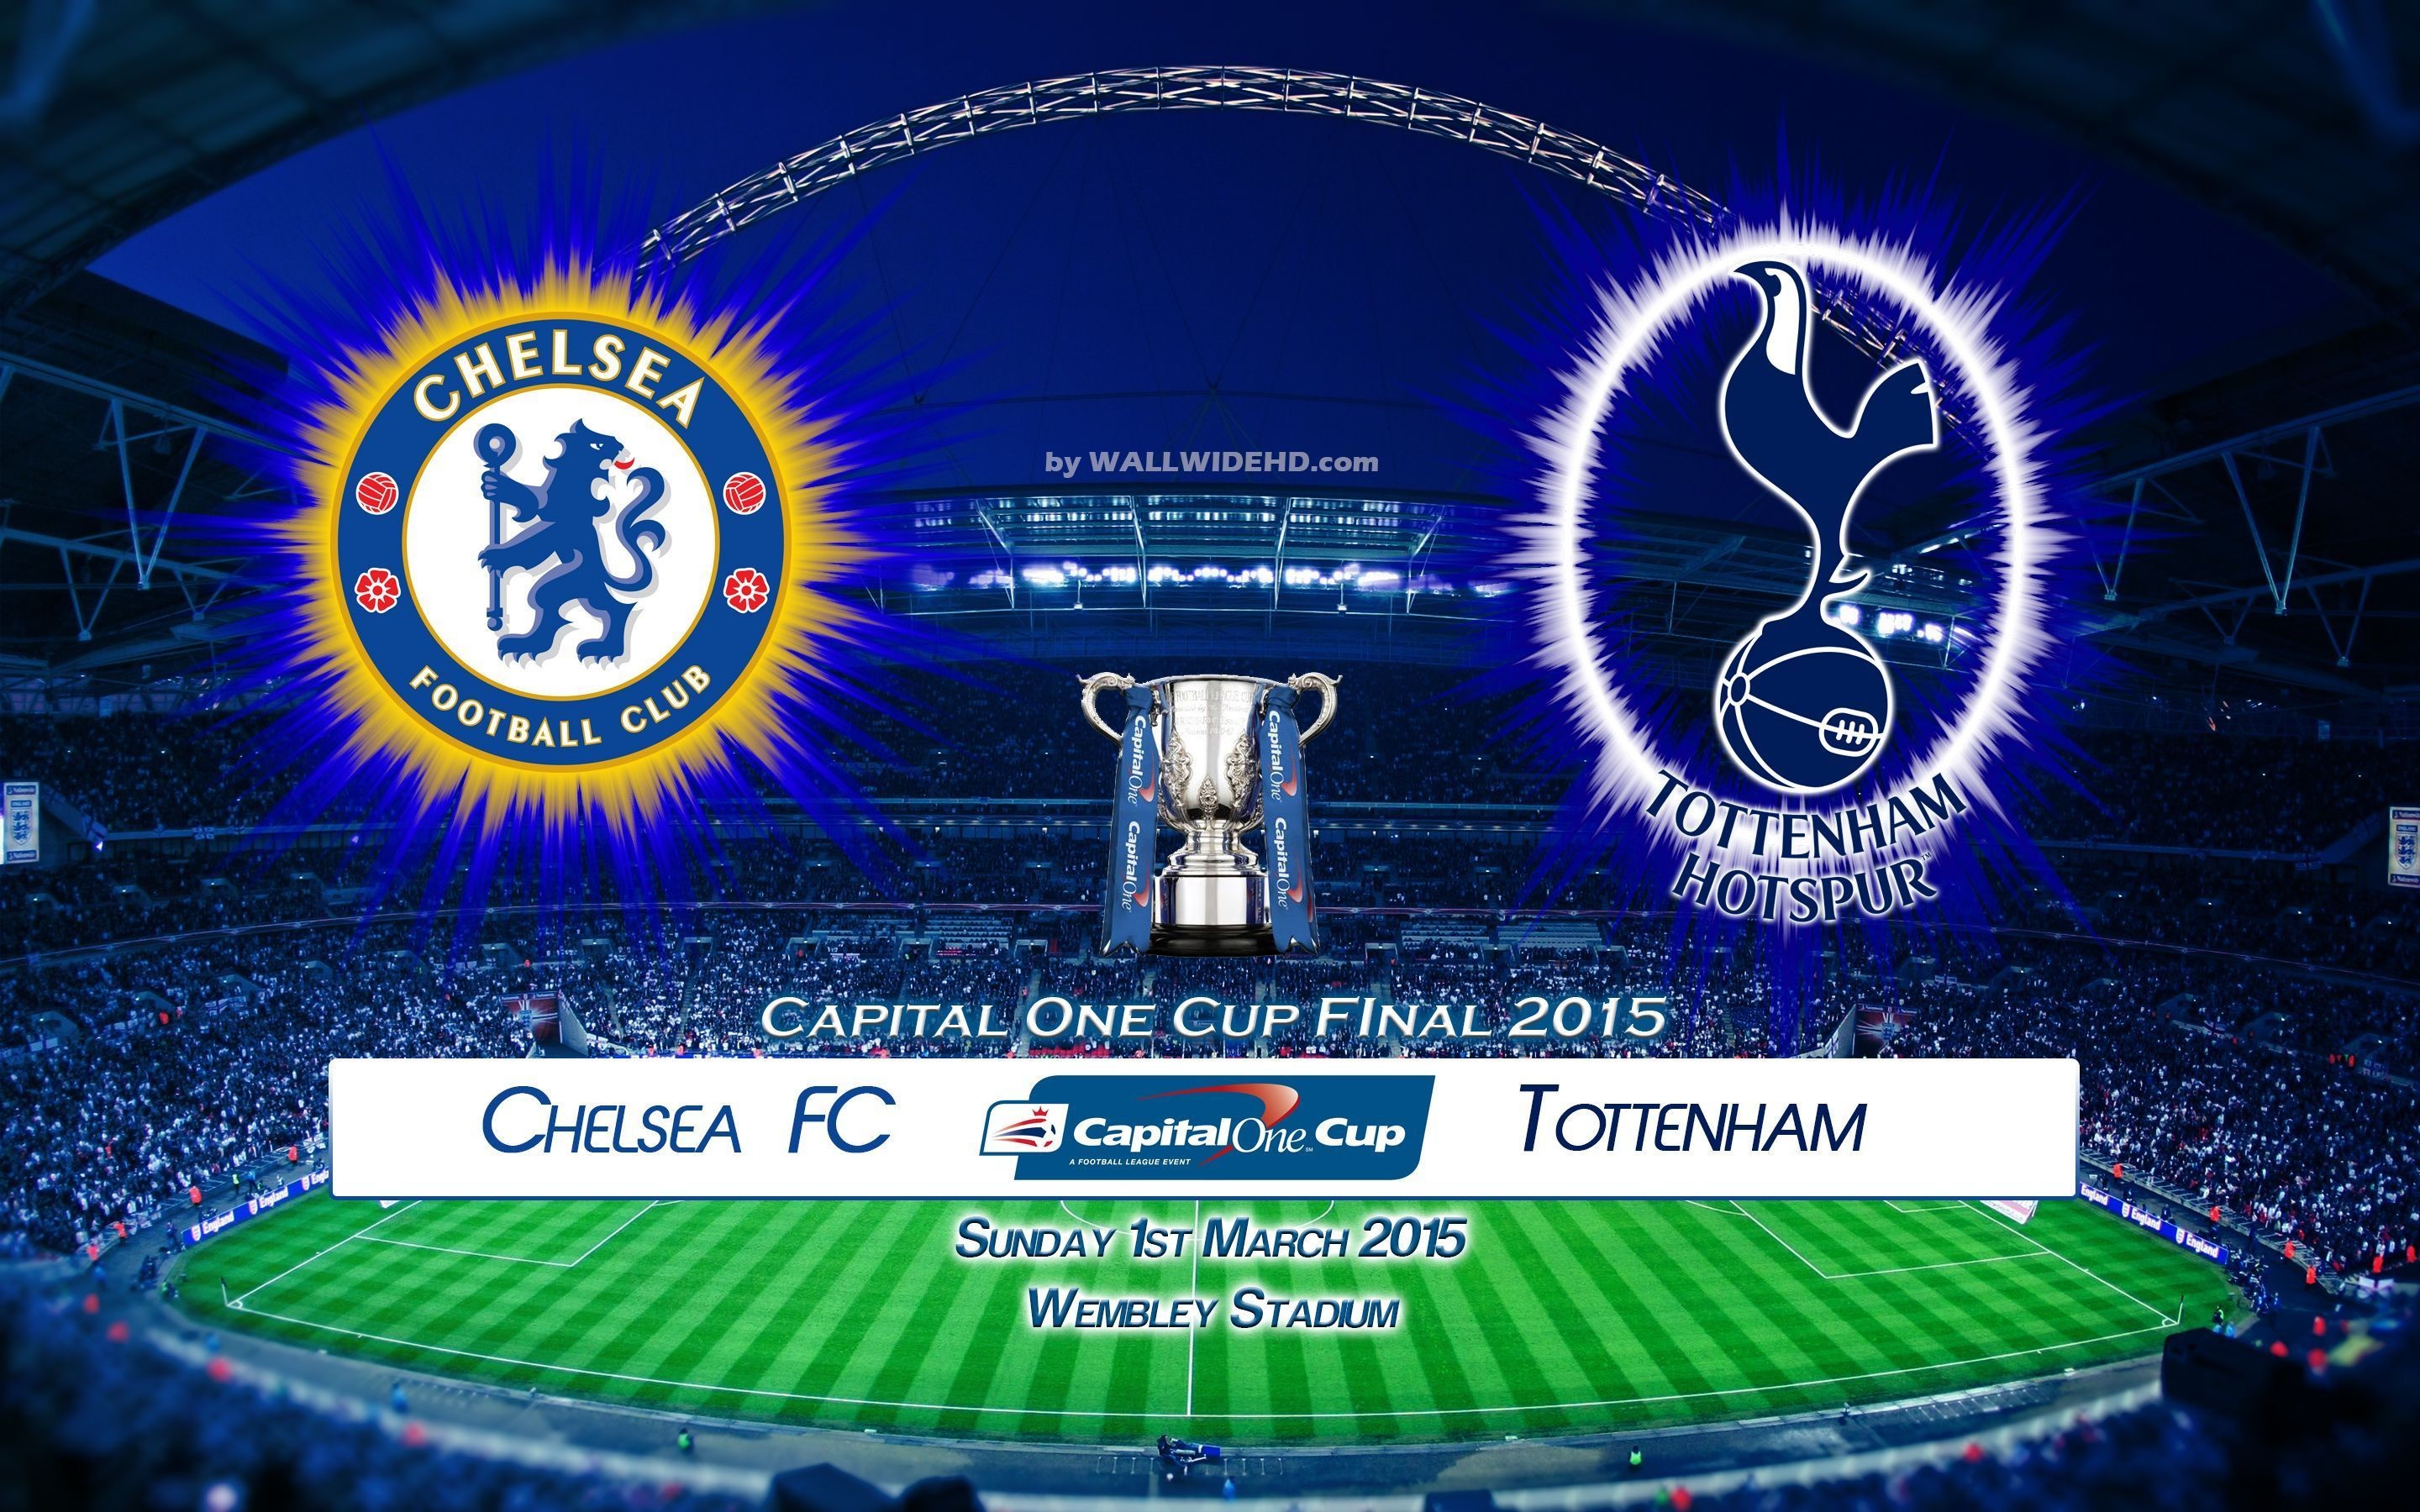 Chelsea FC vs Tottenham Hotspur 2015 Capital One